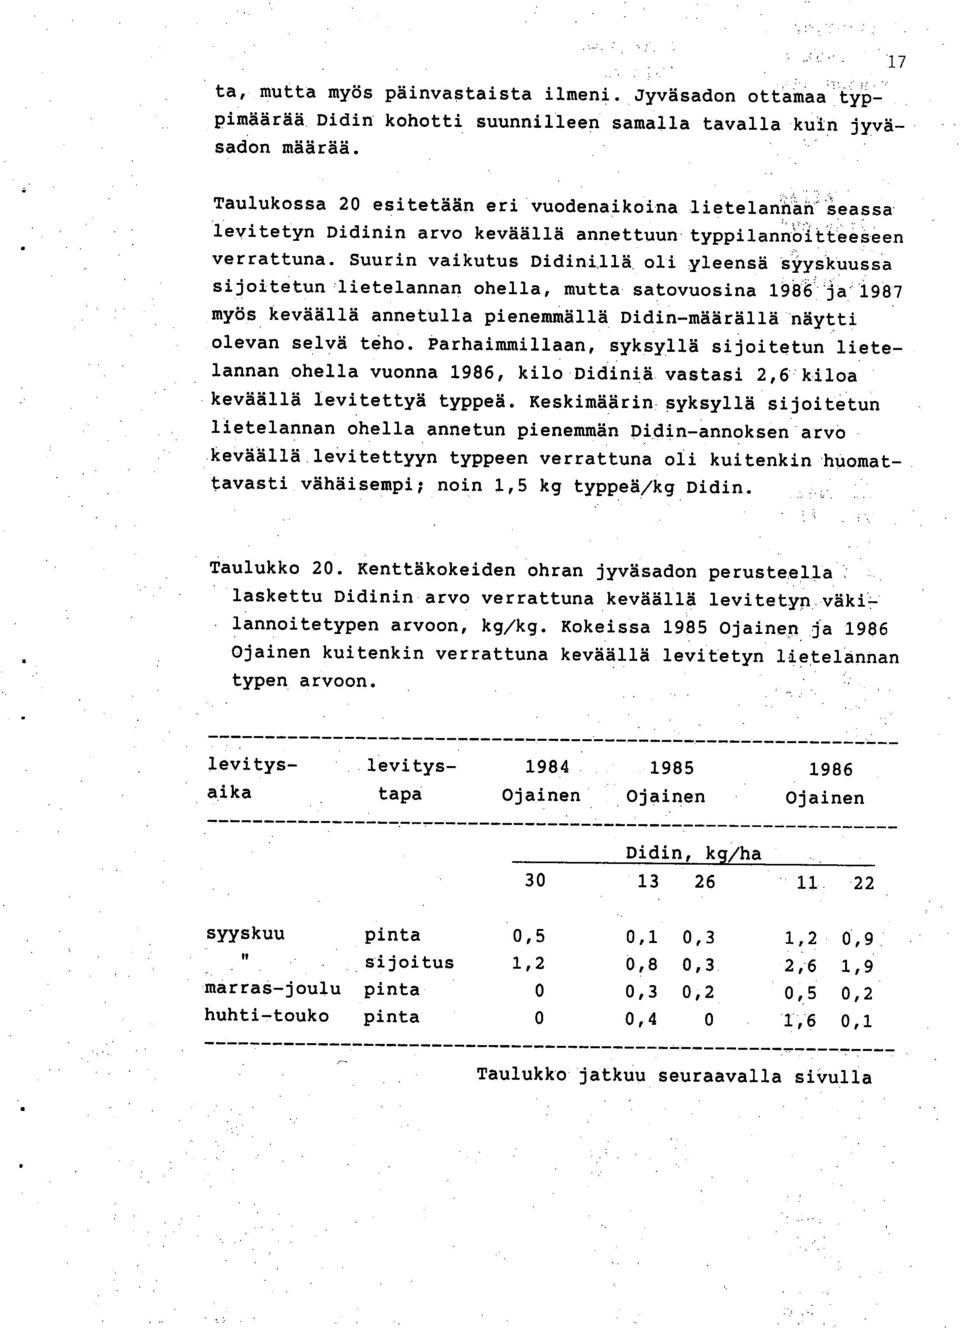 Suurin vaikutus Didinillä oli yleensä syyskuussa sijoitetun nlietelannan ohella, mutta satovuosina 1986 ja 1987 myös keväällä annetulla pienemmällä Didin-määrällä näytti olevan selvä teho.